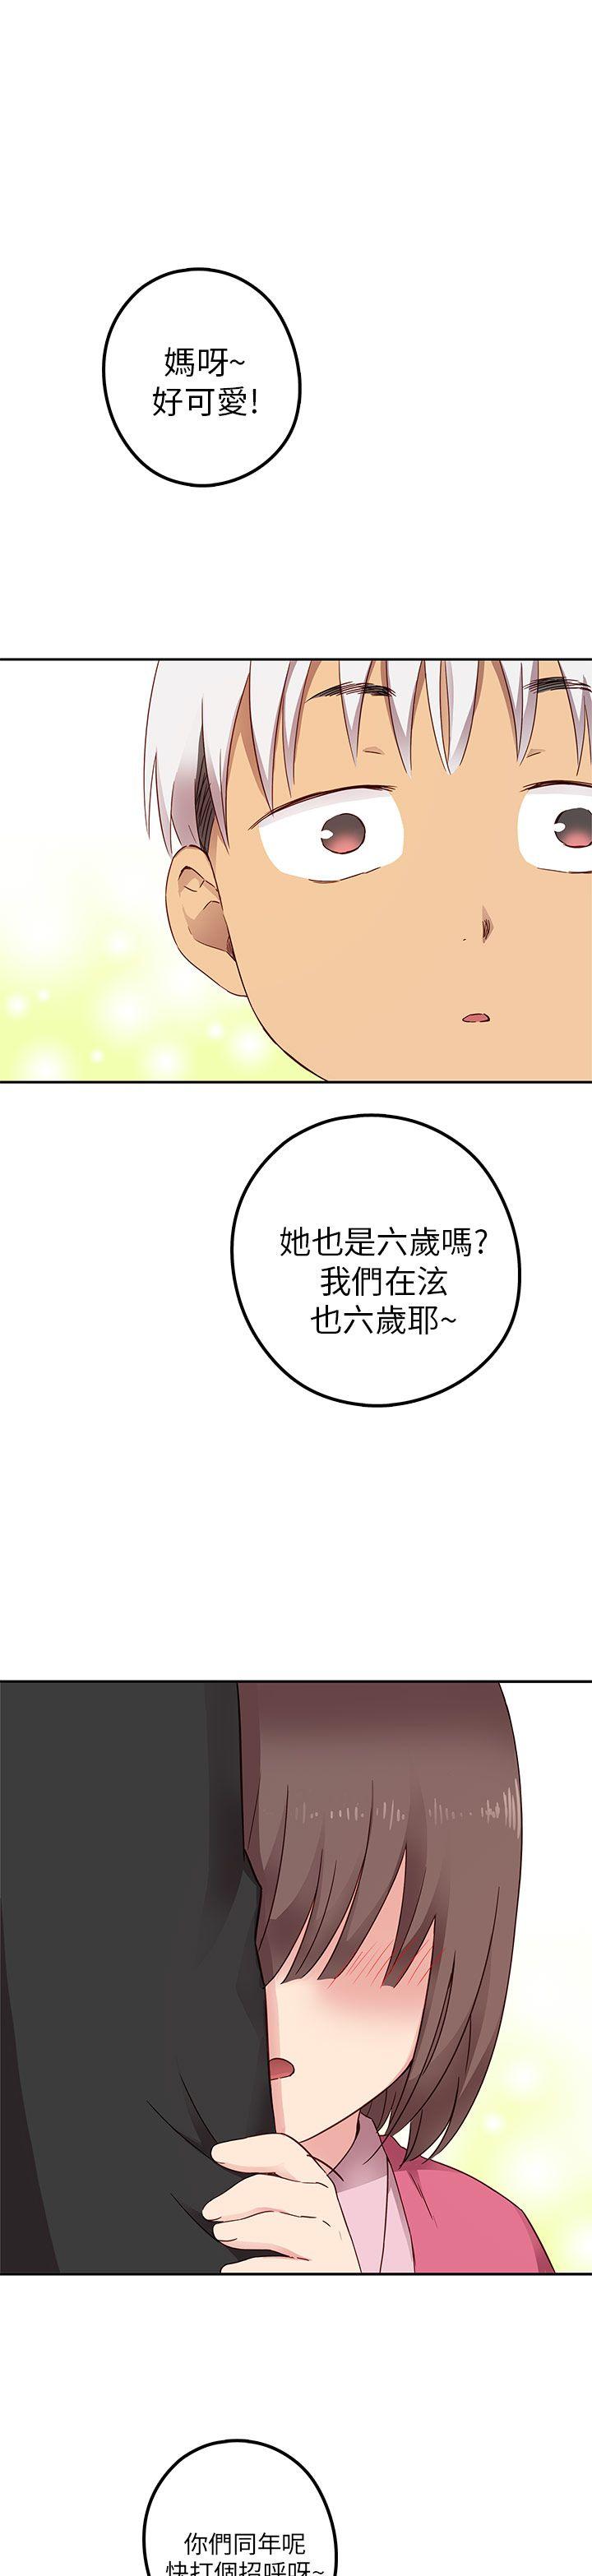 韩国污漫画 H校園 第18话 2